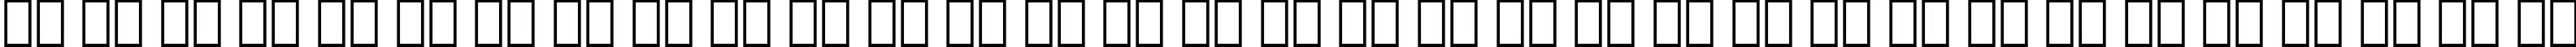 Пример написания русского алфавита шрифтом Aldine 401 Bold BT